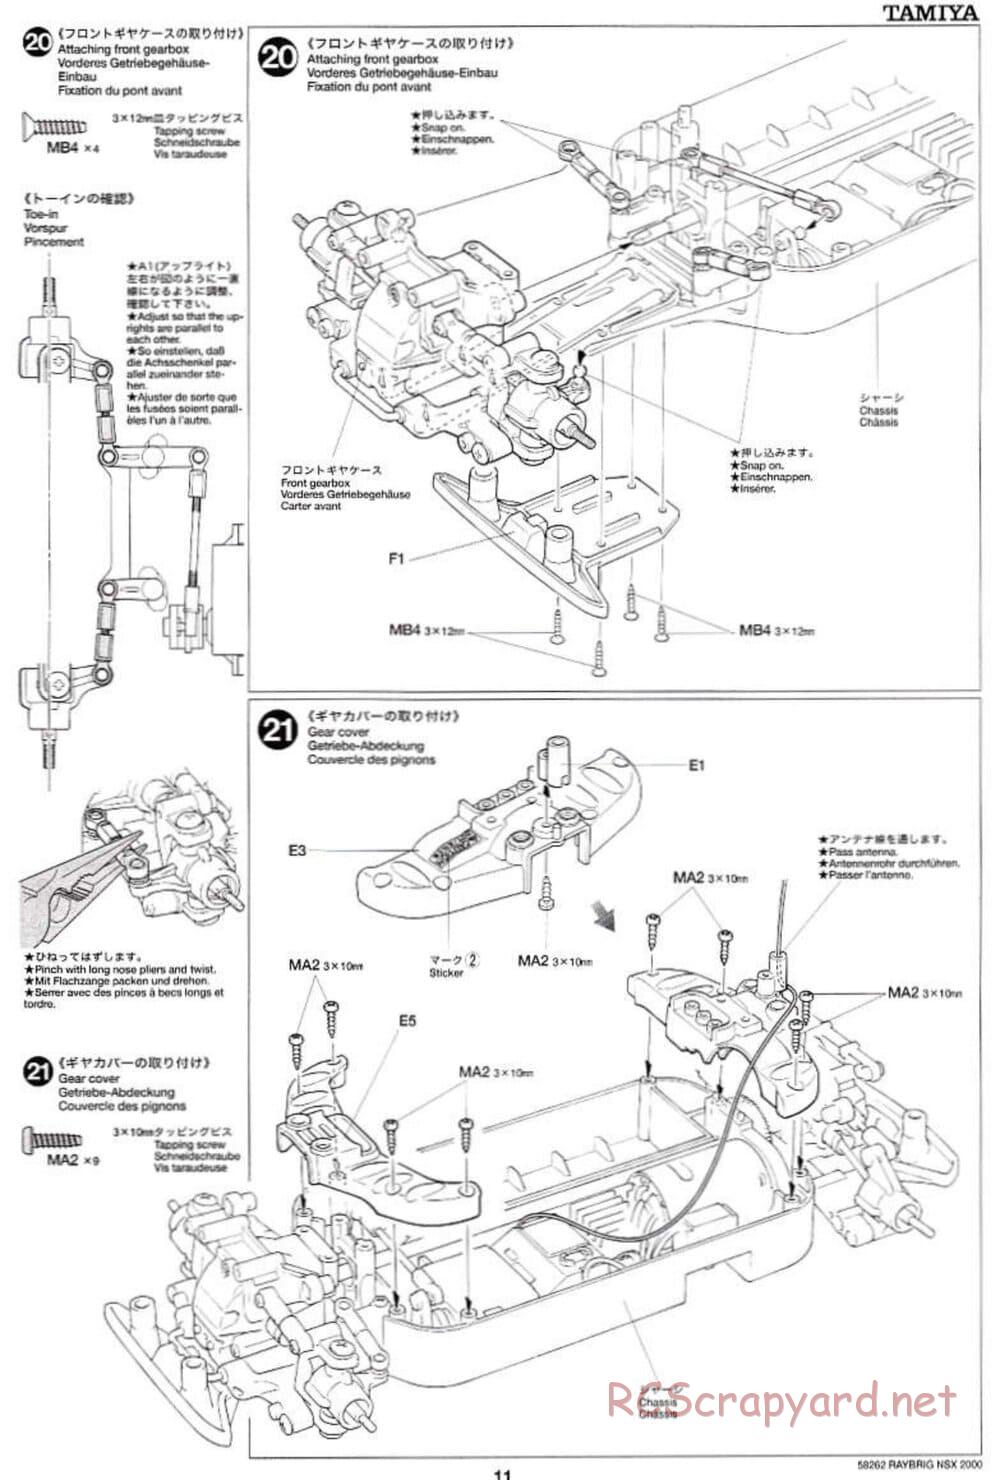 Tamiya - Raybrig NSX 2000 - TB-01 Chassis - Manual - Page 11